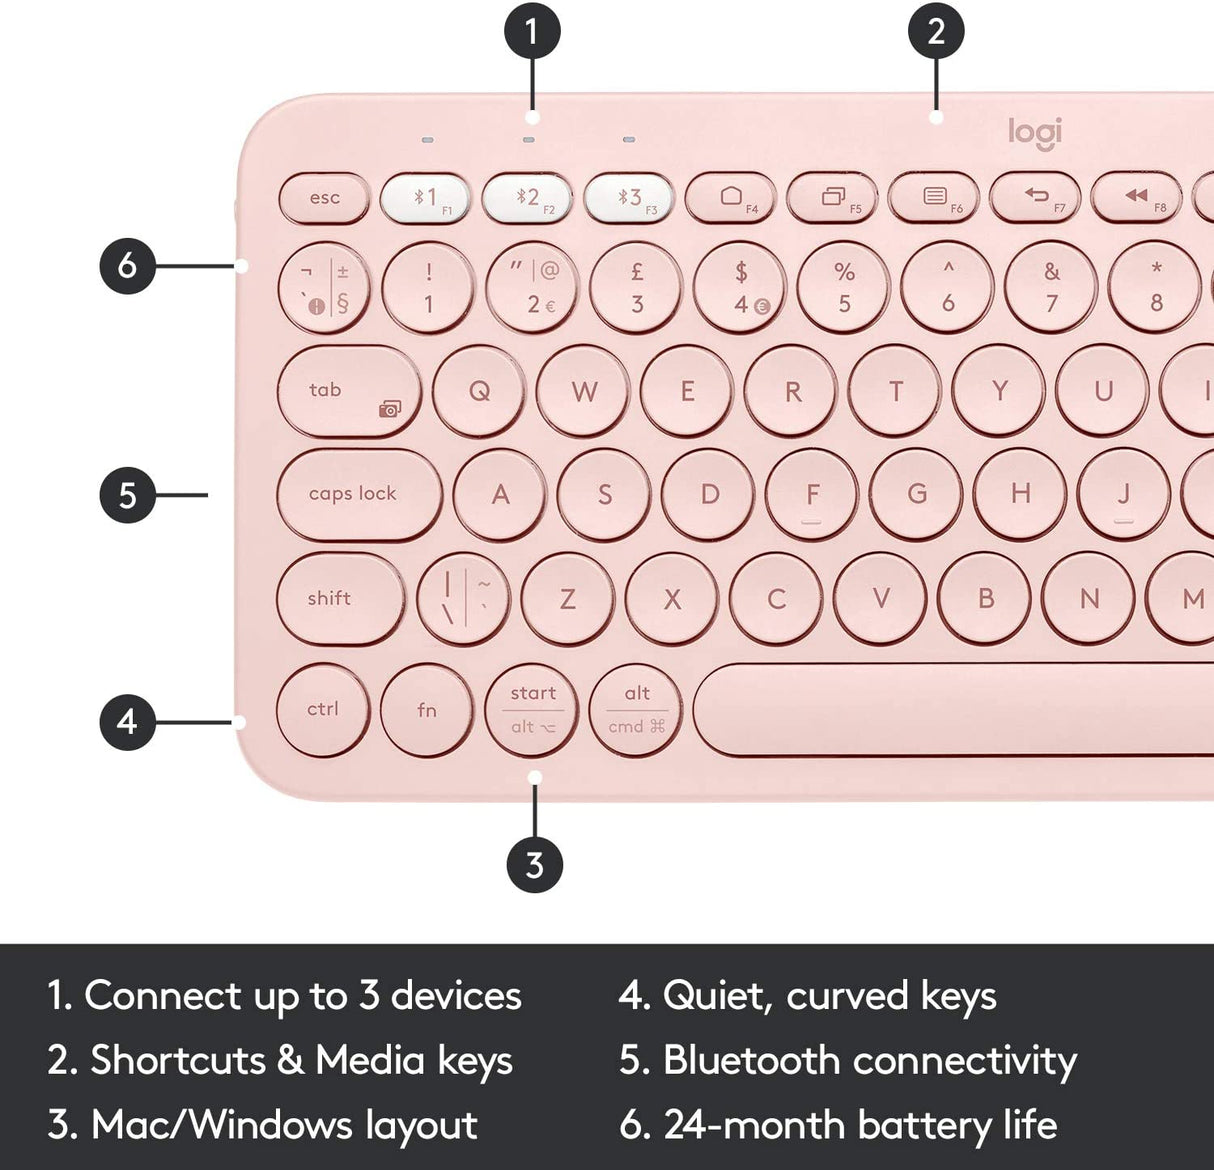 لوحة مفاتيح لوجيتك K380 متعددة الأجهزة 